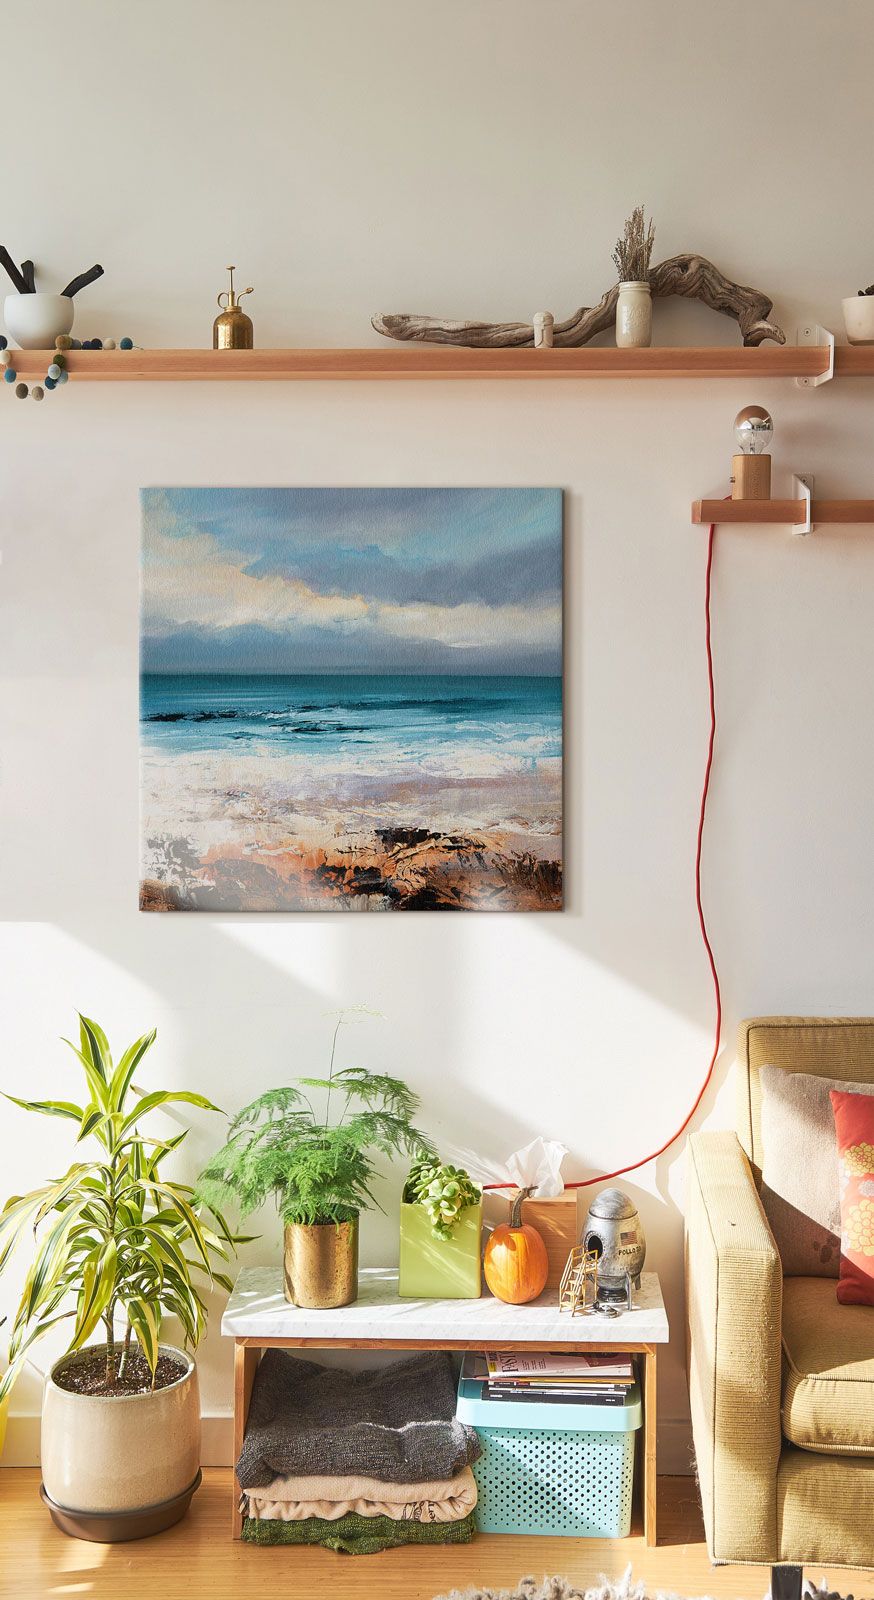 Canvas o rozmiarach 60x60 cm z widokiem na ocean wiszący w pokoju pod drewnianą półką